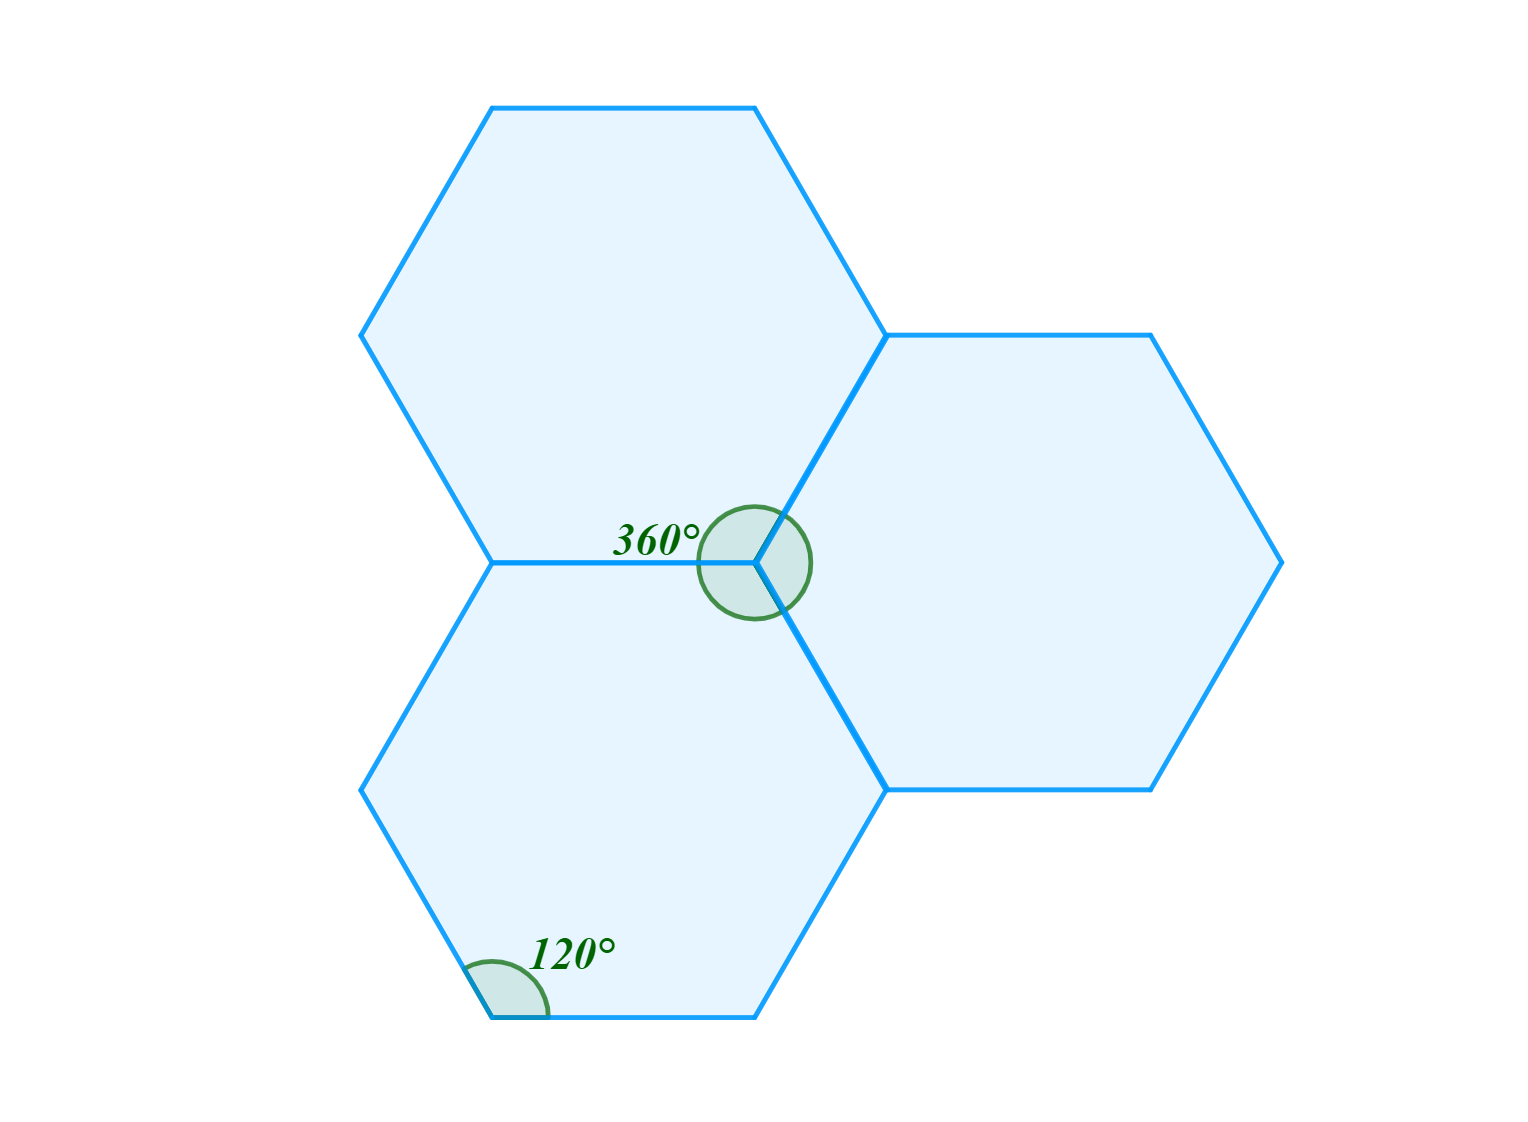 Pravidelný mnohostěn nemůže být tvořen pravidelnými šestiúhelníky